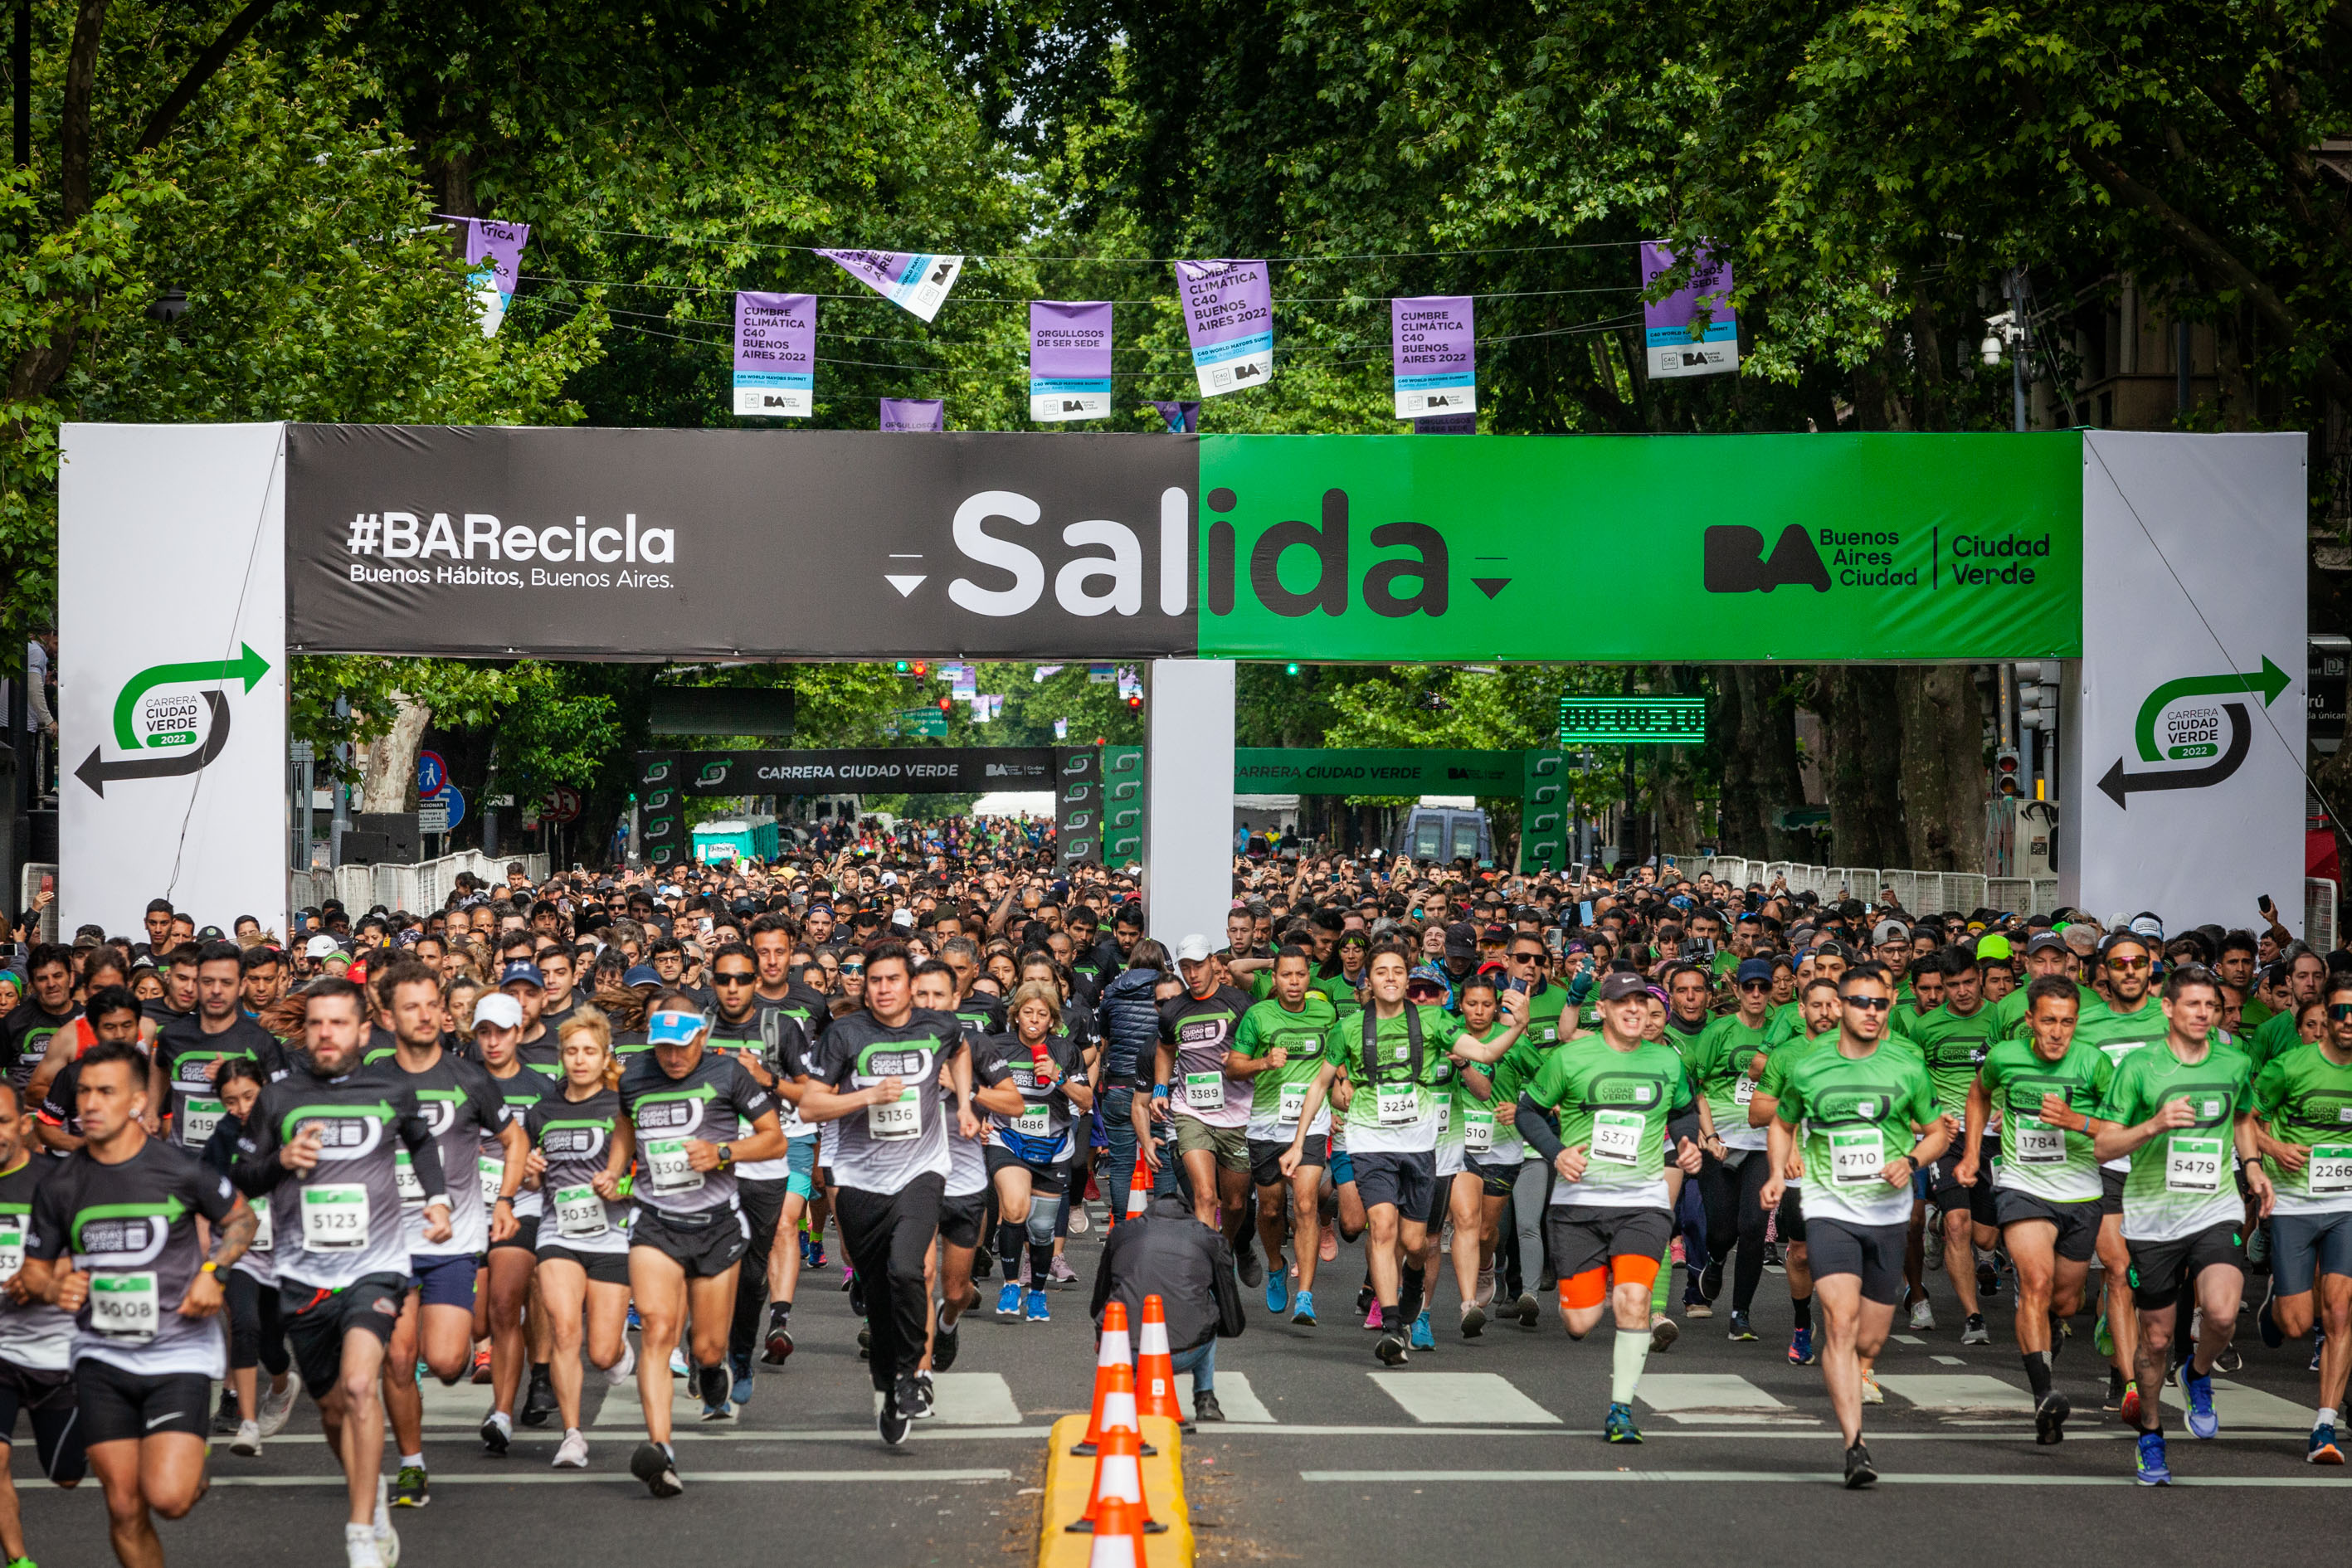 Más de 9.000 personas corrieron la Carrera Ciudad Verde Edición C40